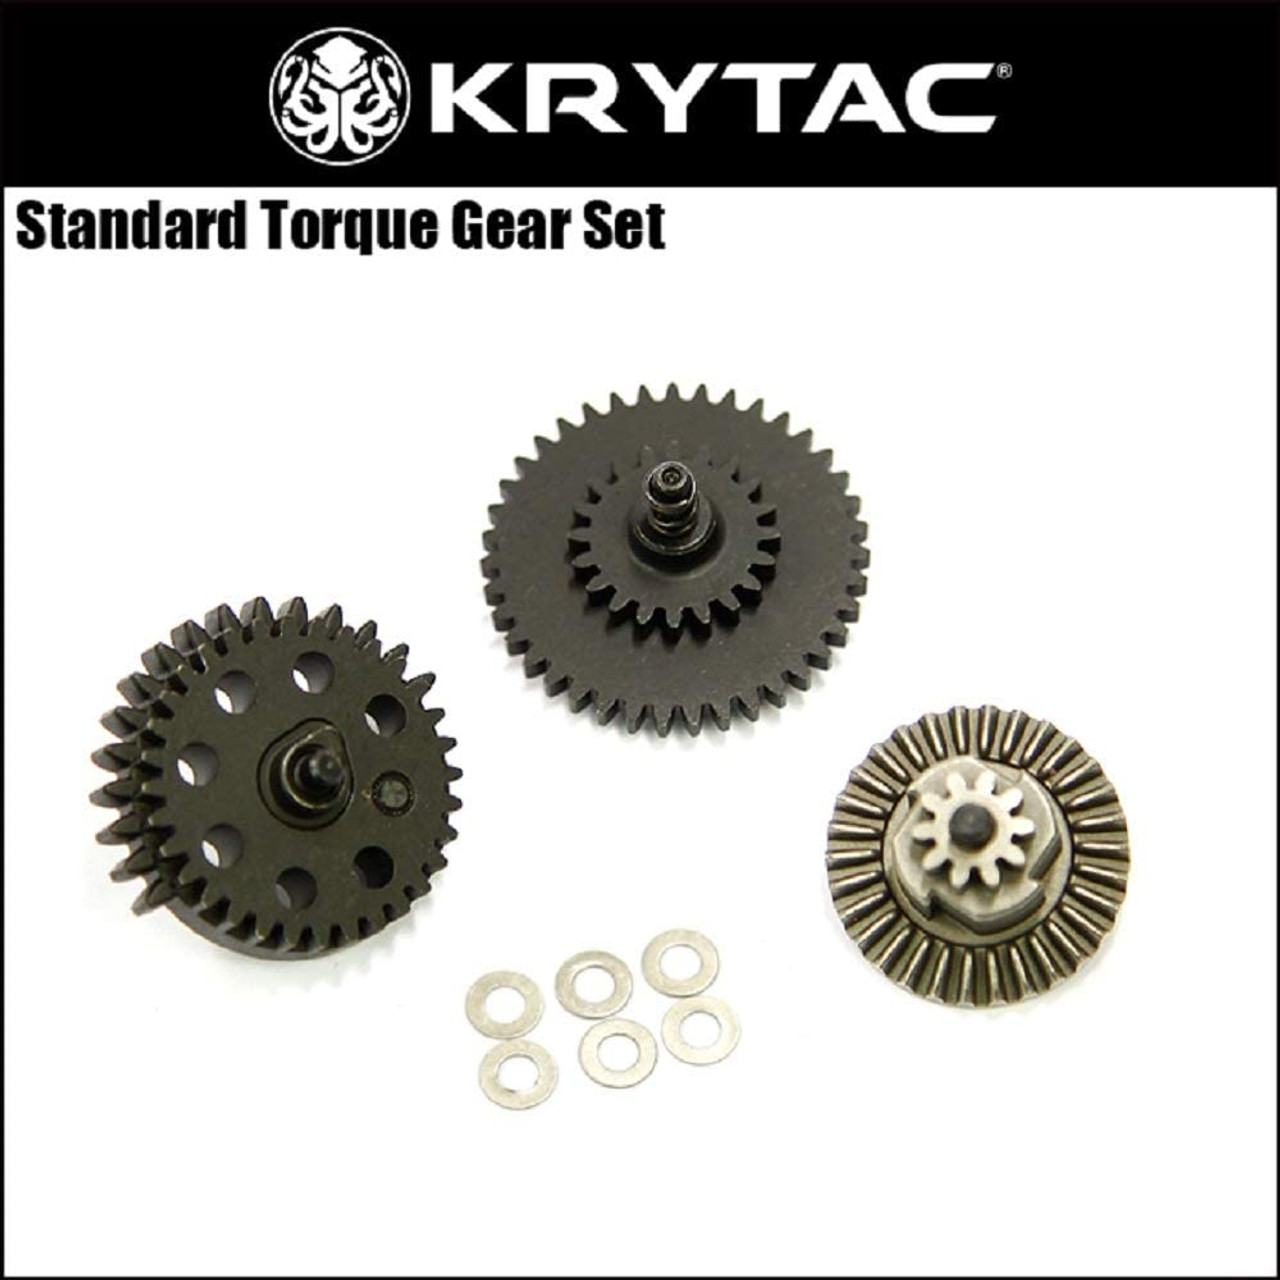 KRYTAC standard torque gear set for TRIDENT / LVOA